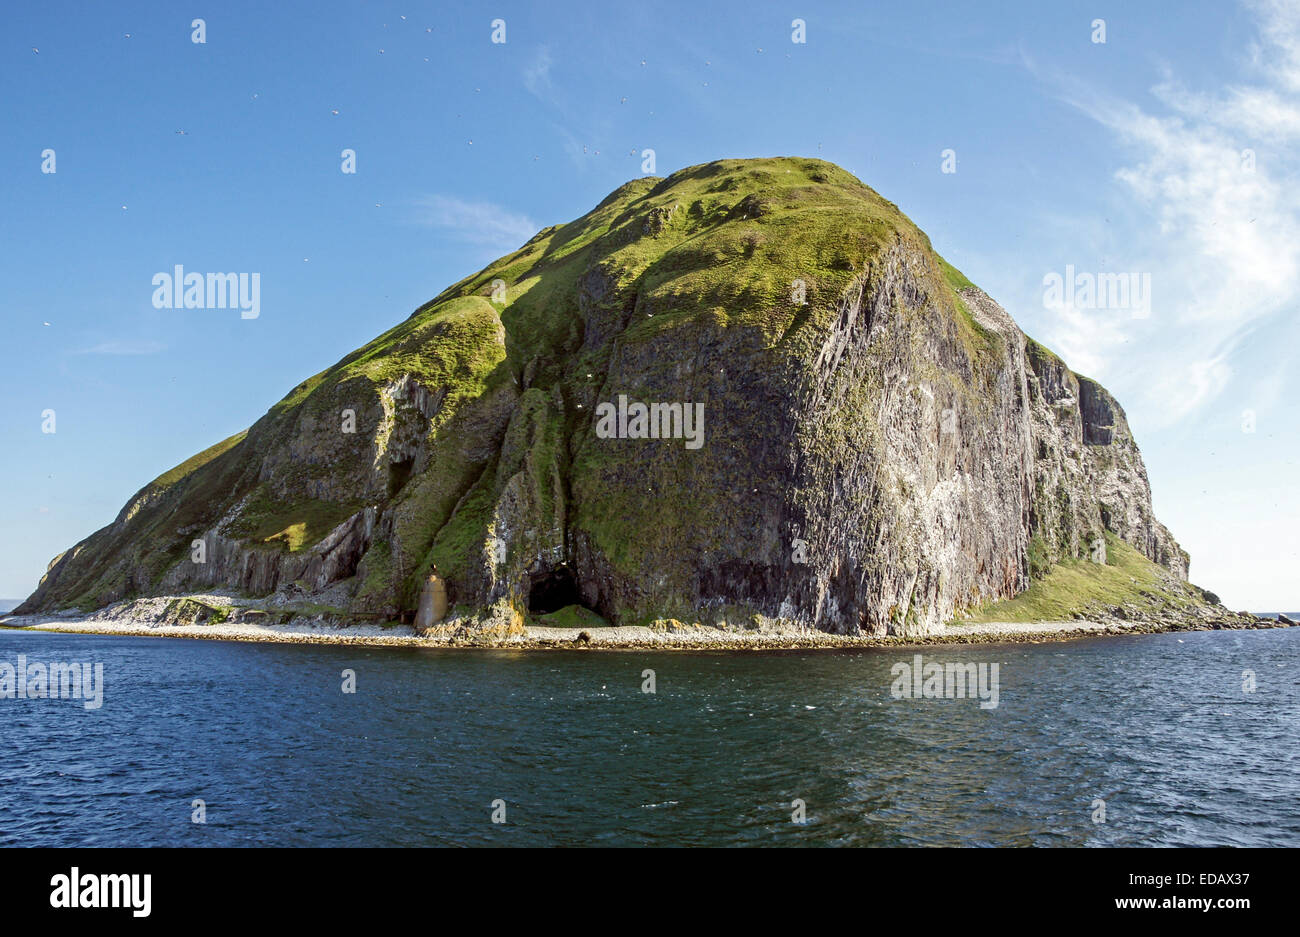 Westerly vista della famosa isola scozzese Ailsa Craig si trova all'estremità sud del Firth of Clyde in Scozia occidentale Foto Stock